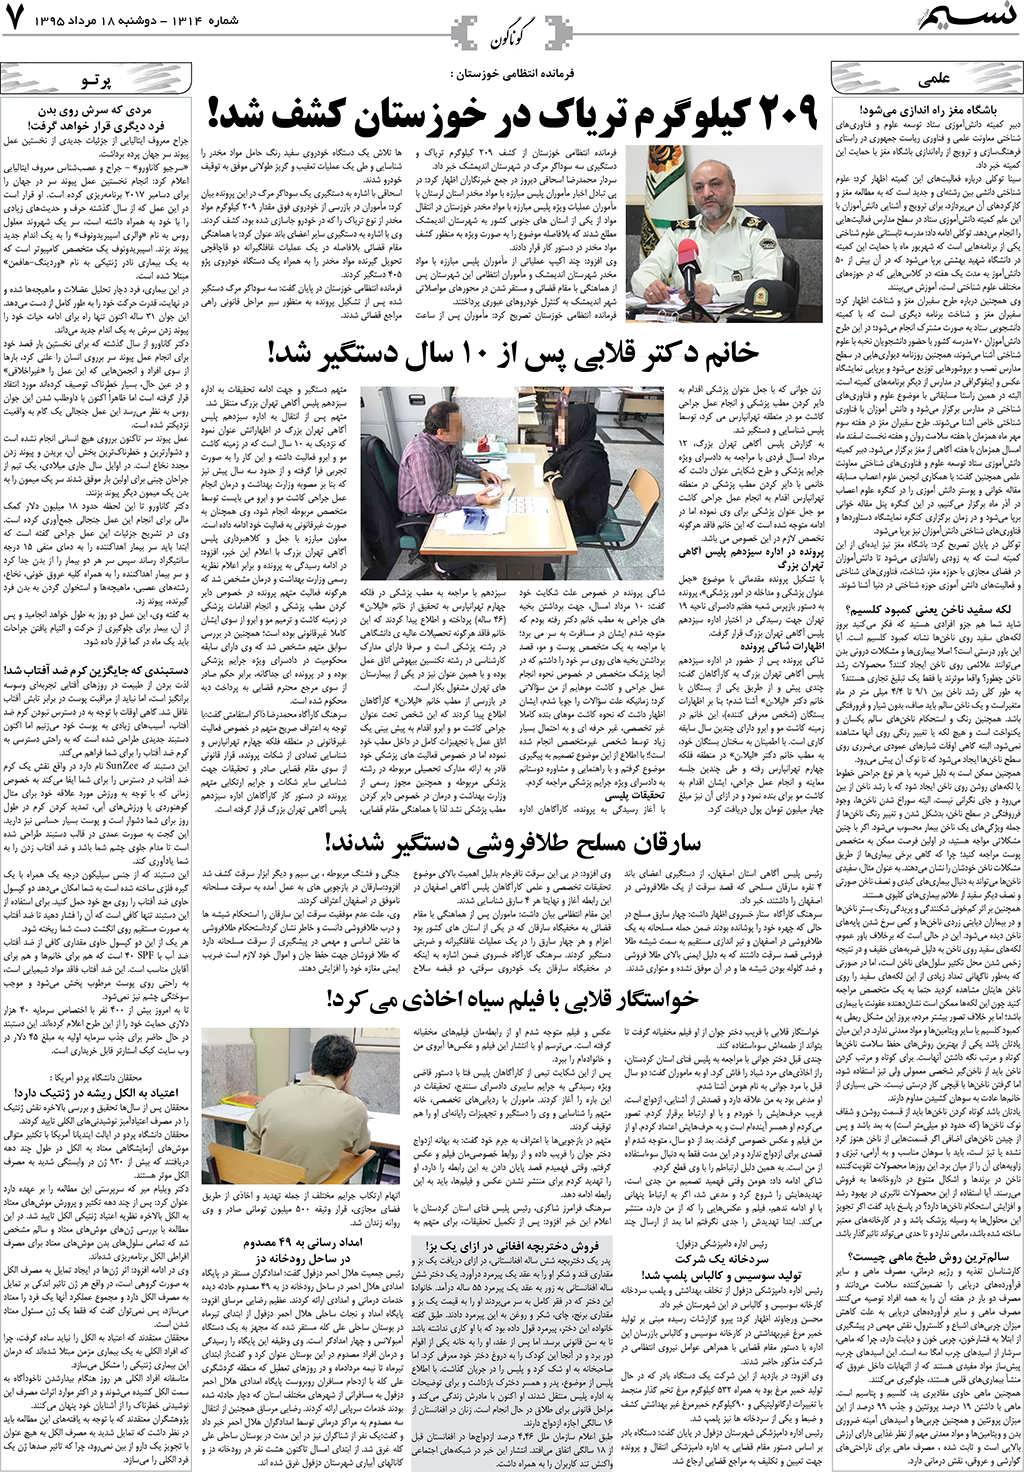 صفحه گوناگون روزنامه نسیم شماره 1314